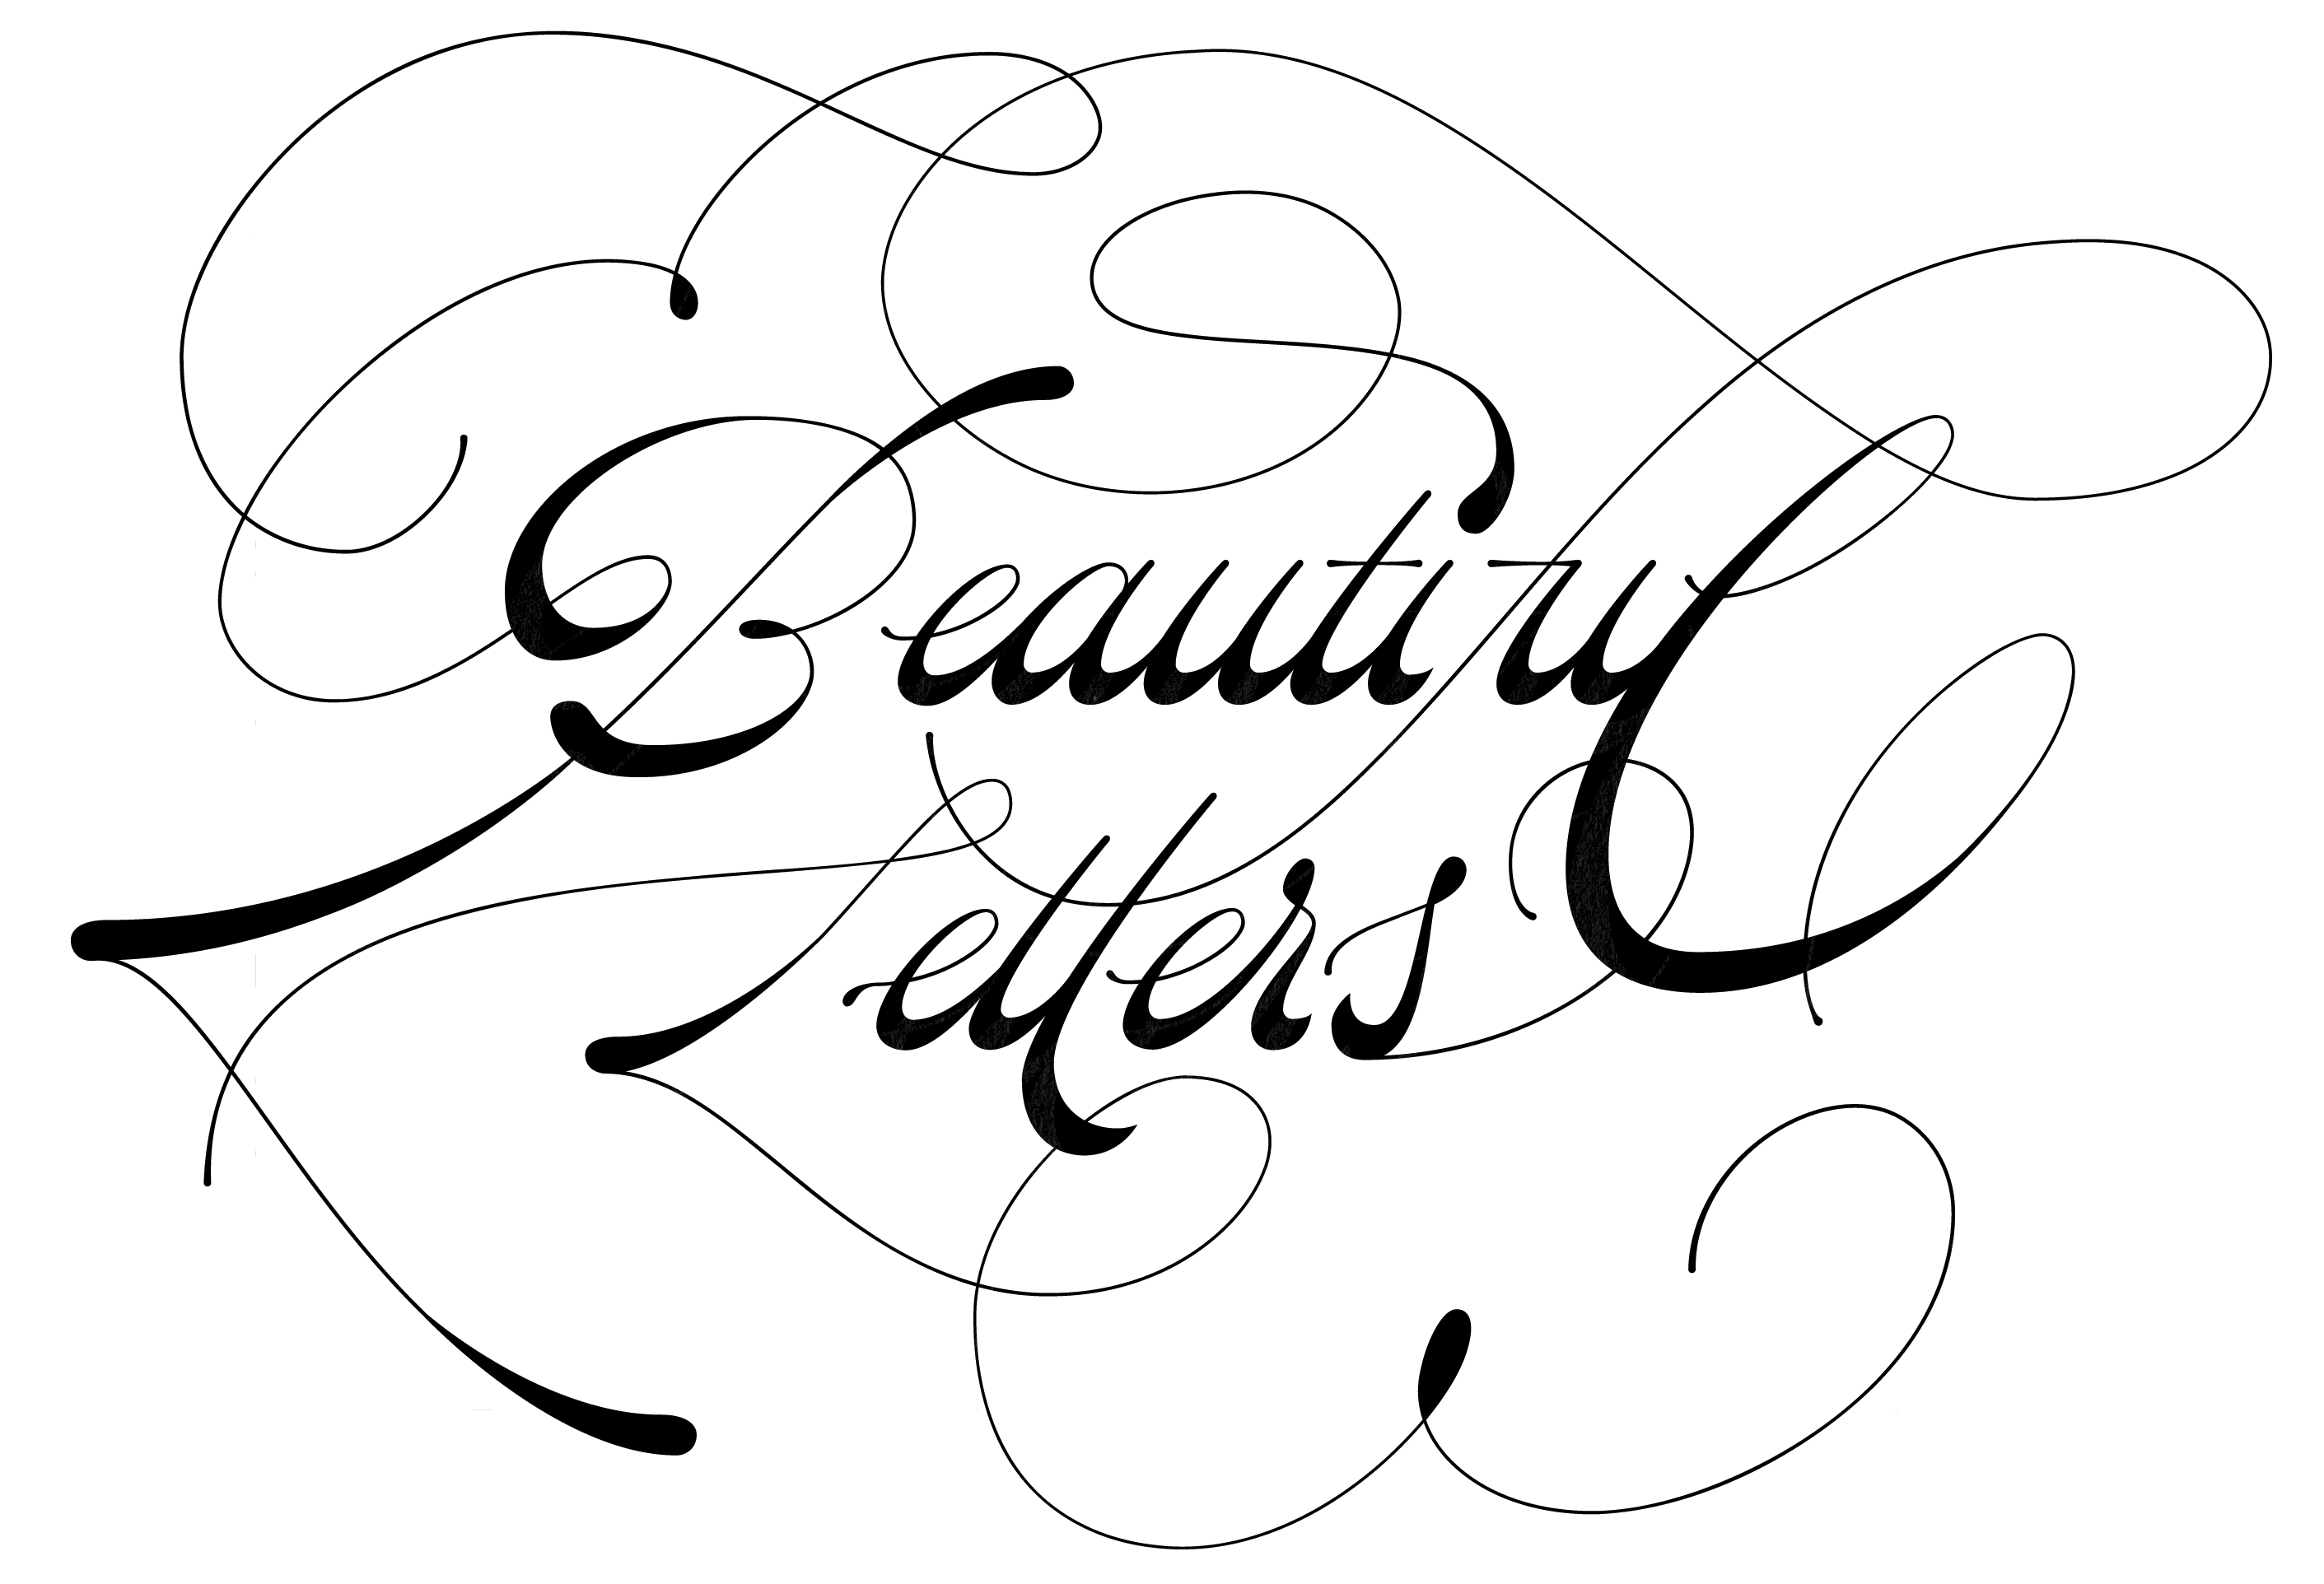 Ein Schriftzug (schwarz auf weiß) mit dem englischen Wortlaut: Beautiful Letters" (Schöne Buchstaben).